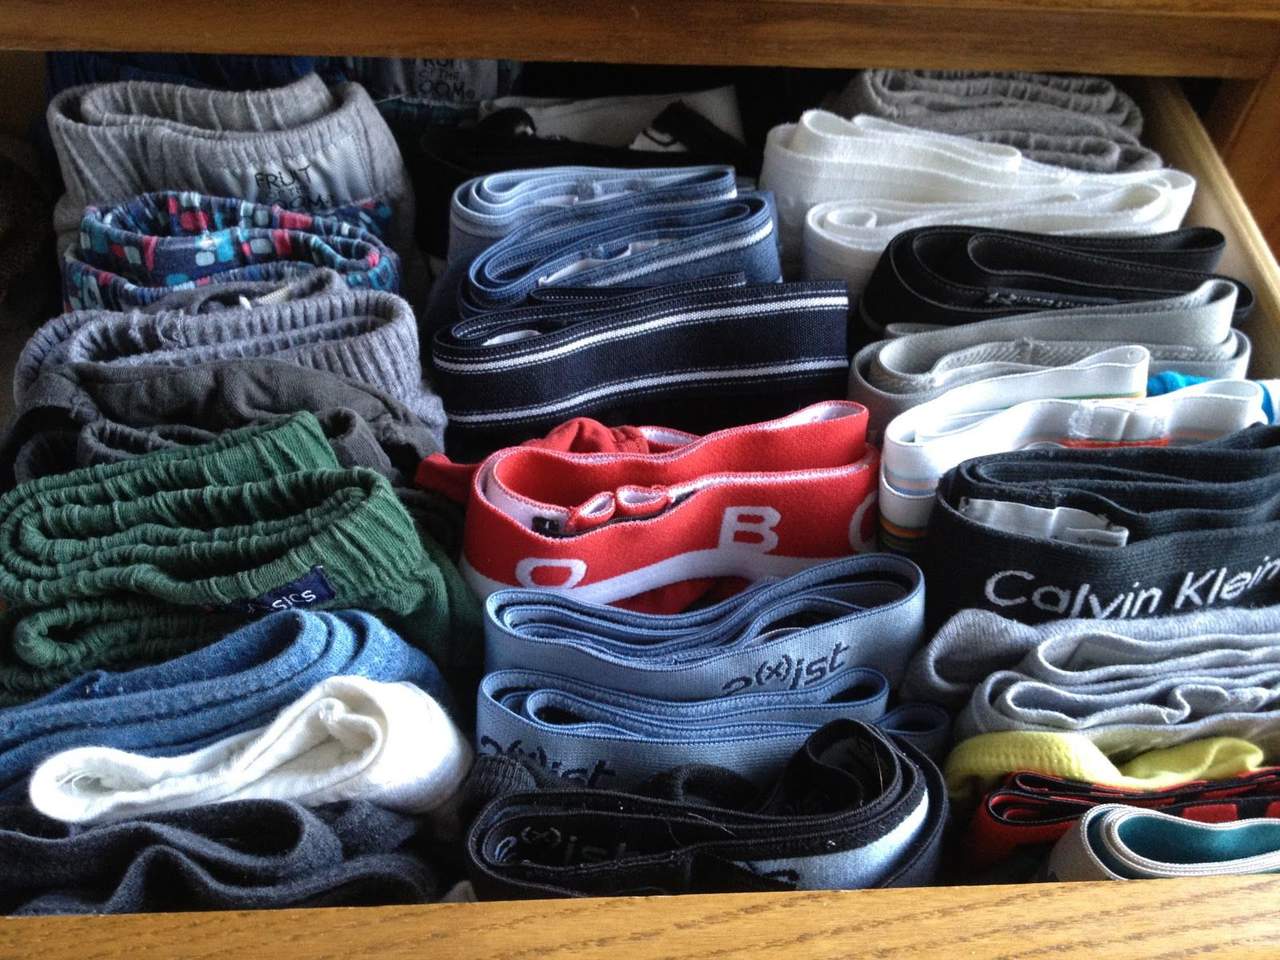 Investigadores de la Universidad de Harvard concluyeron que los hombres que usan calzoncillos anchos tienen concentraciones de esperma más altas que aquellos que visten ropa interior ajustada. (ESPECIAL)